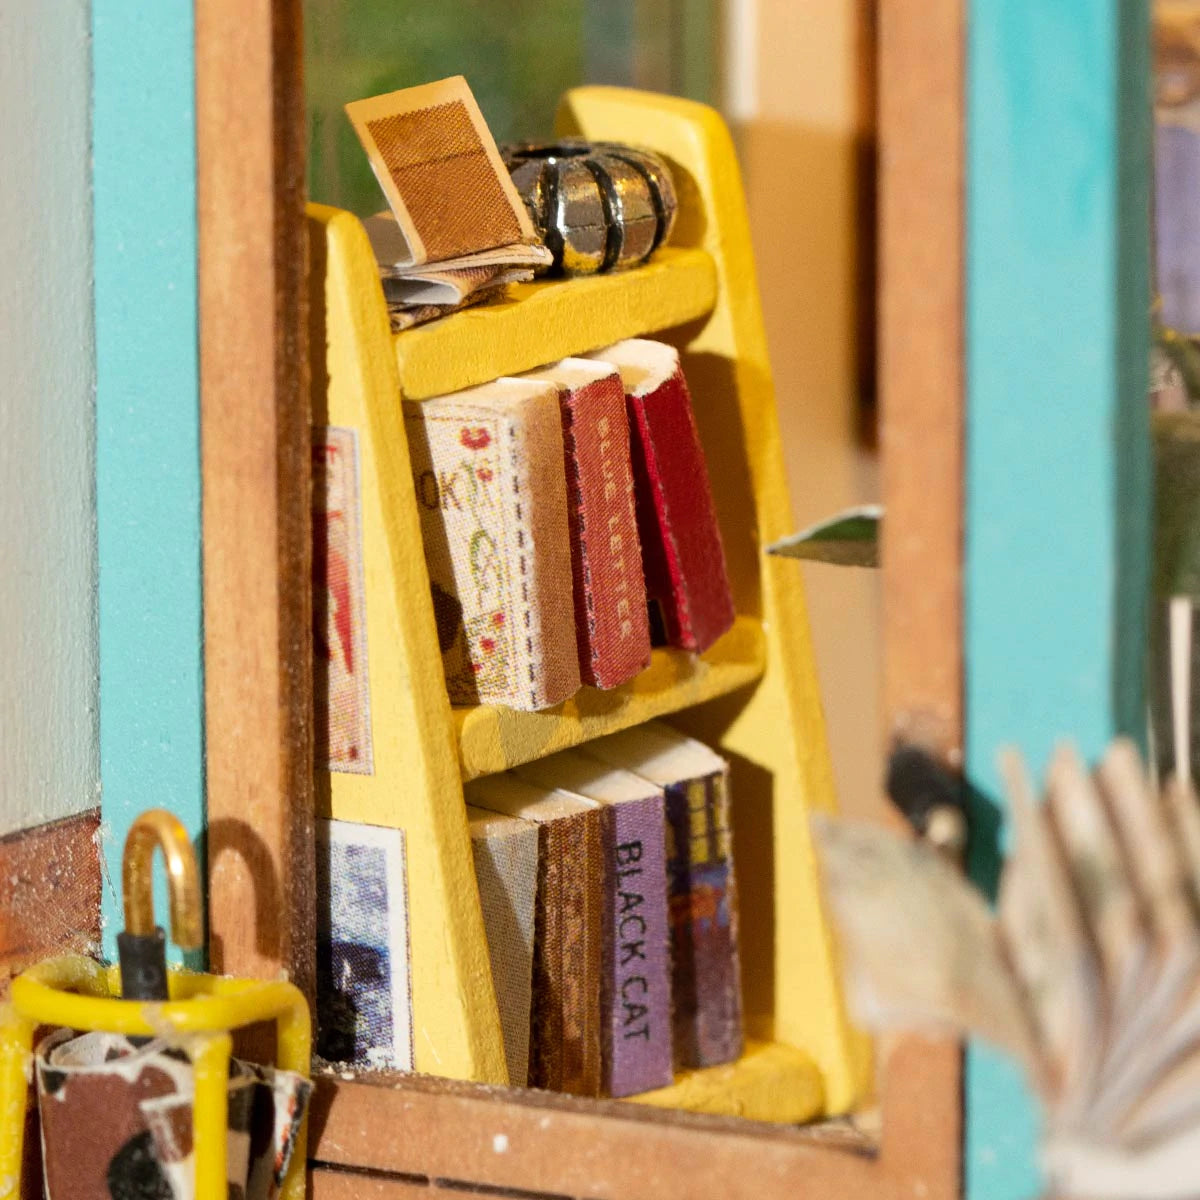 Free Time Bookshop DIY Diorama Kit